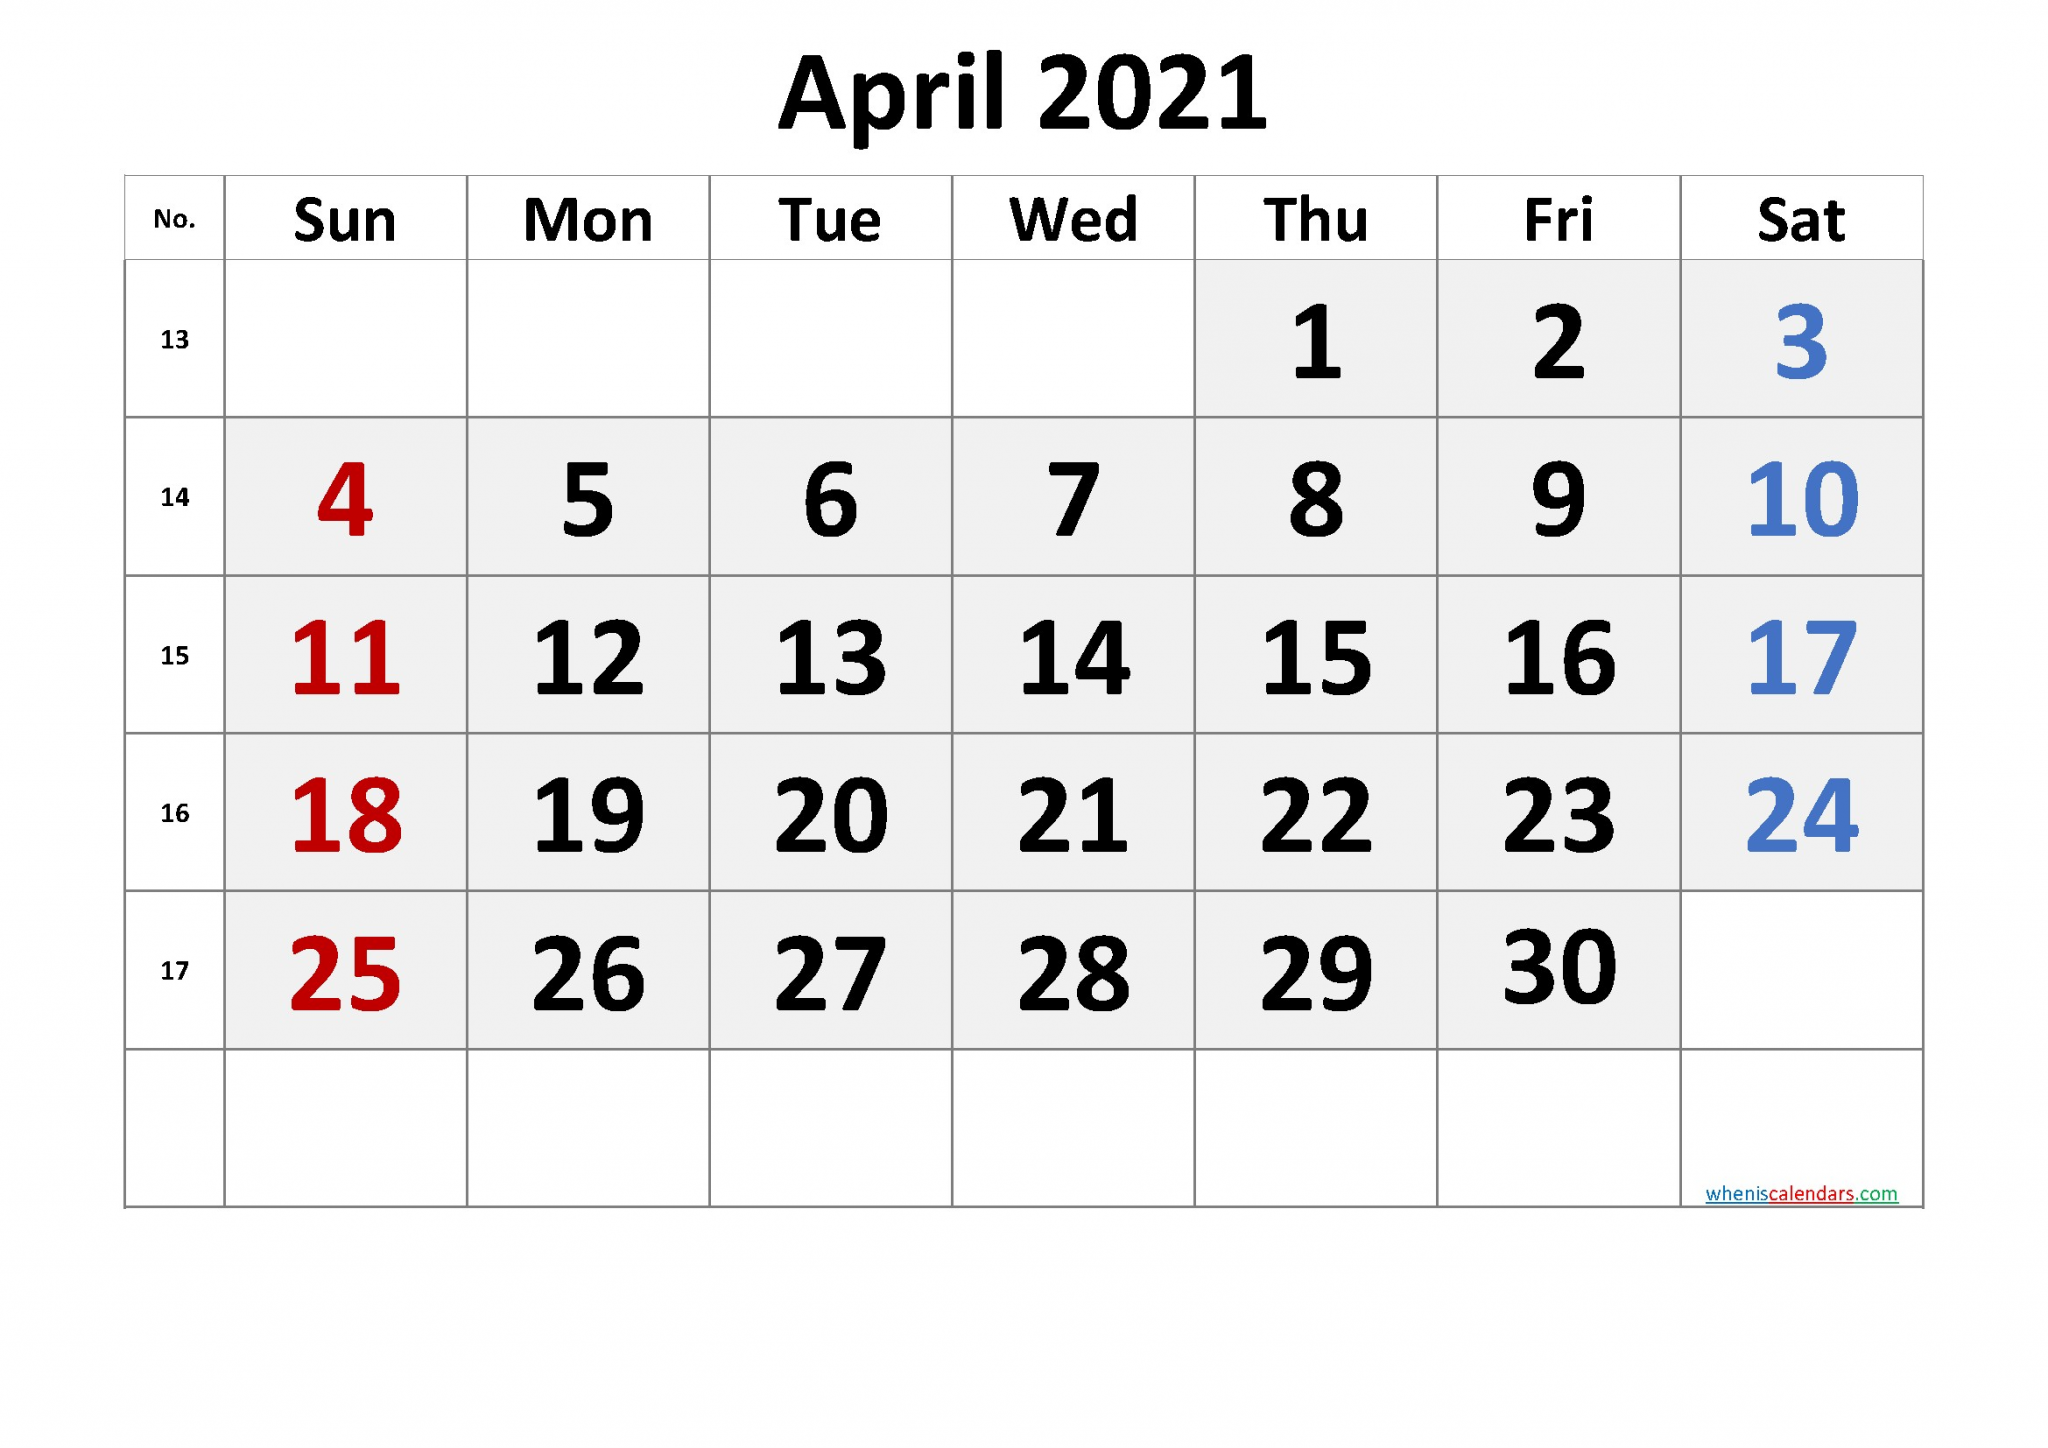 2021 calendar with week number